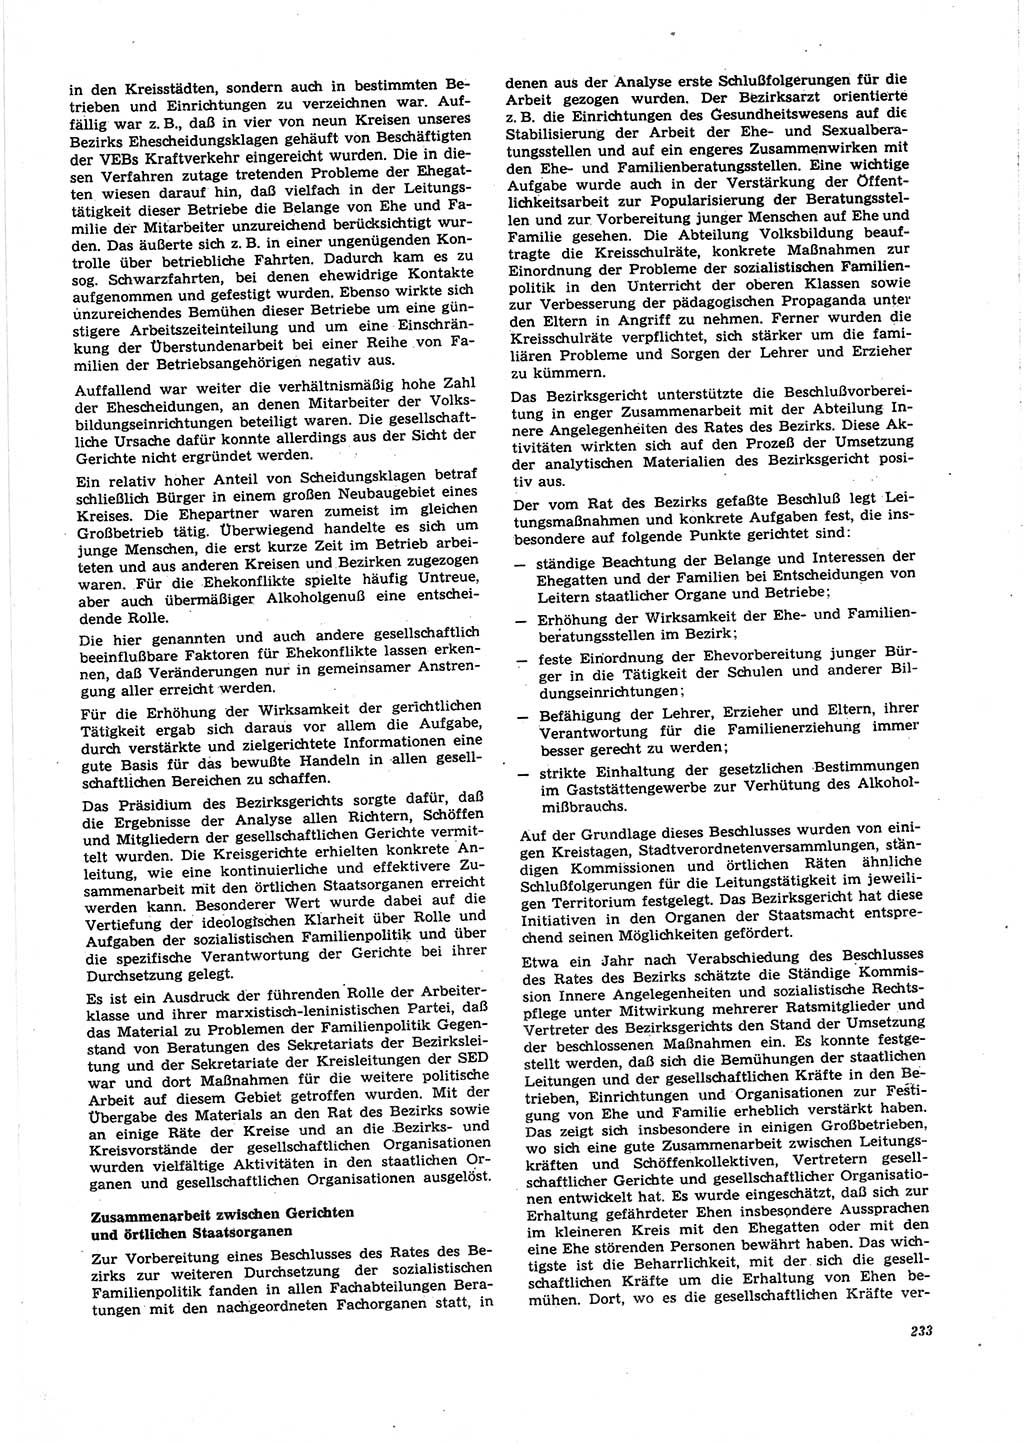 Neue Justiz (NJ), Zeitschrift für Recht und Rechtswissenschaft [Deutsche Demokratische Republik (DDR)], 27. Jahrgang 1973, Seite 233 (NJ DDR 1973, S. 233)